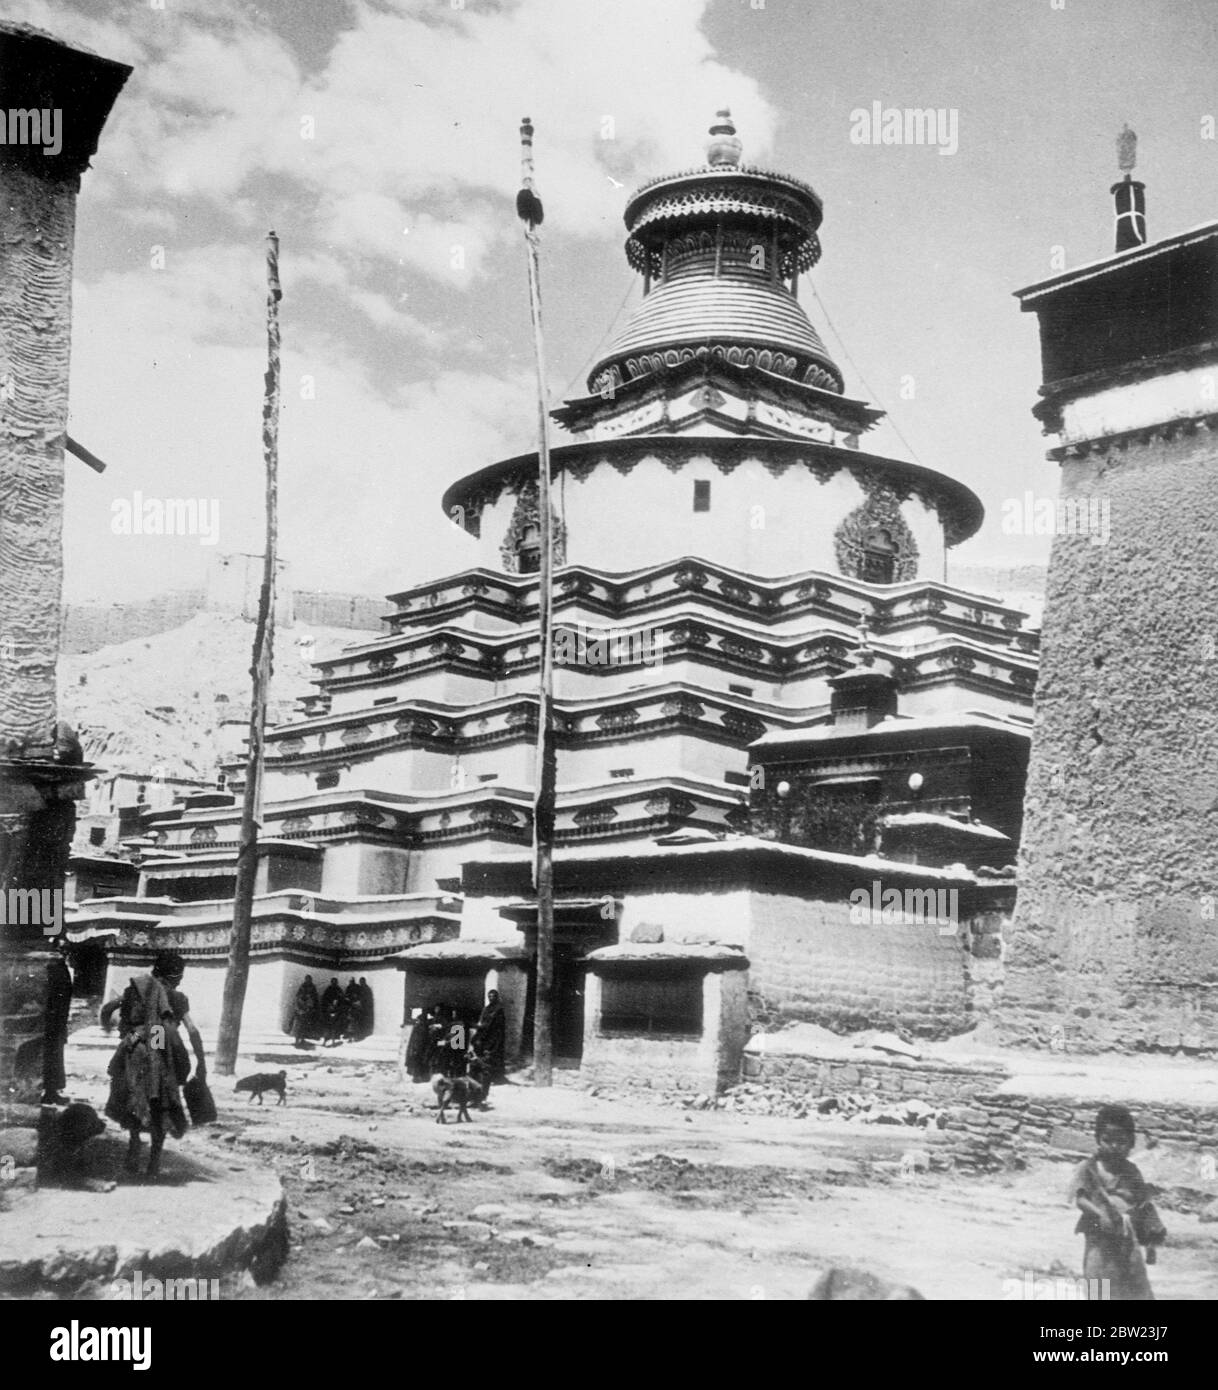 Dans le pays peu connu des Lamas. Ces photos ont été faites par des membres d'une expédition envoyée dans la 'Terre interdite' des Lamas, le Tibet, le mystérieux pays qui borde l'Inde et la Chine. Ce n'est qu'après cinq ans de négociations que l'expédition a été autorisée à visiter Lhassa, la ville sainte, où seulement une douzaine d'hommes blancs sont connus pour être entrés. Expositions de photos, le Grand Choten (Sanctuaire) , le plus grand du Tibet et l'un des centres de pèlerinage. Il est situé dans la Lamasery de Pal Kor Chode à Gyantse, troisième plus grande ville du Tibet. Banque D'Images